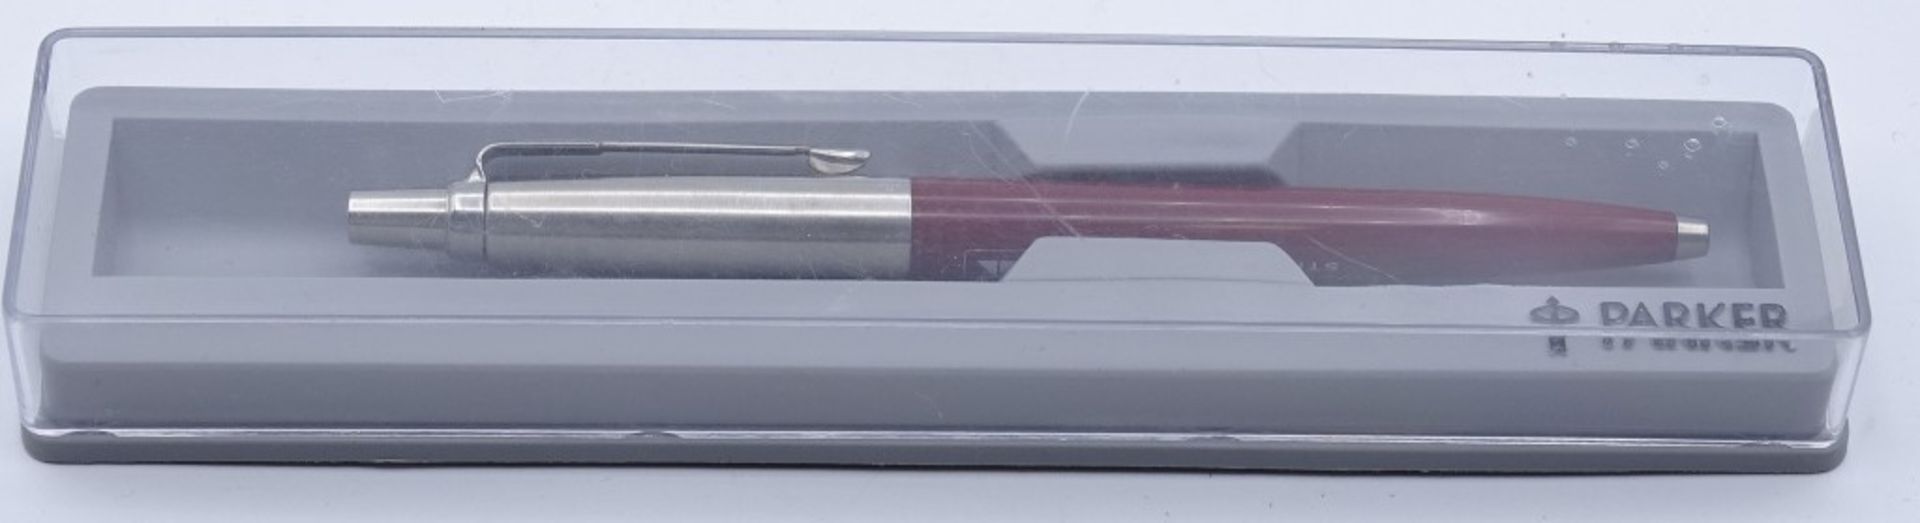 Kugelschreiber "Parker", in Schachtel, mit Werbung